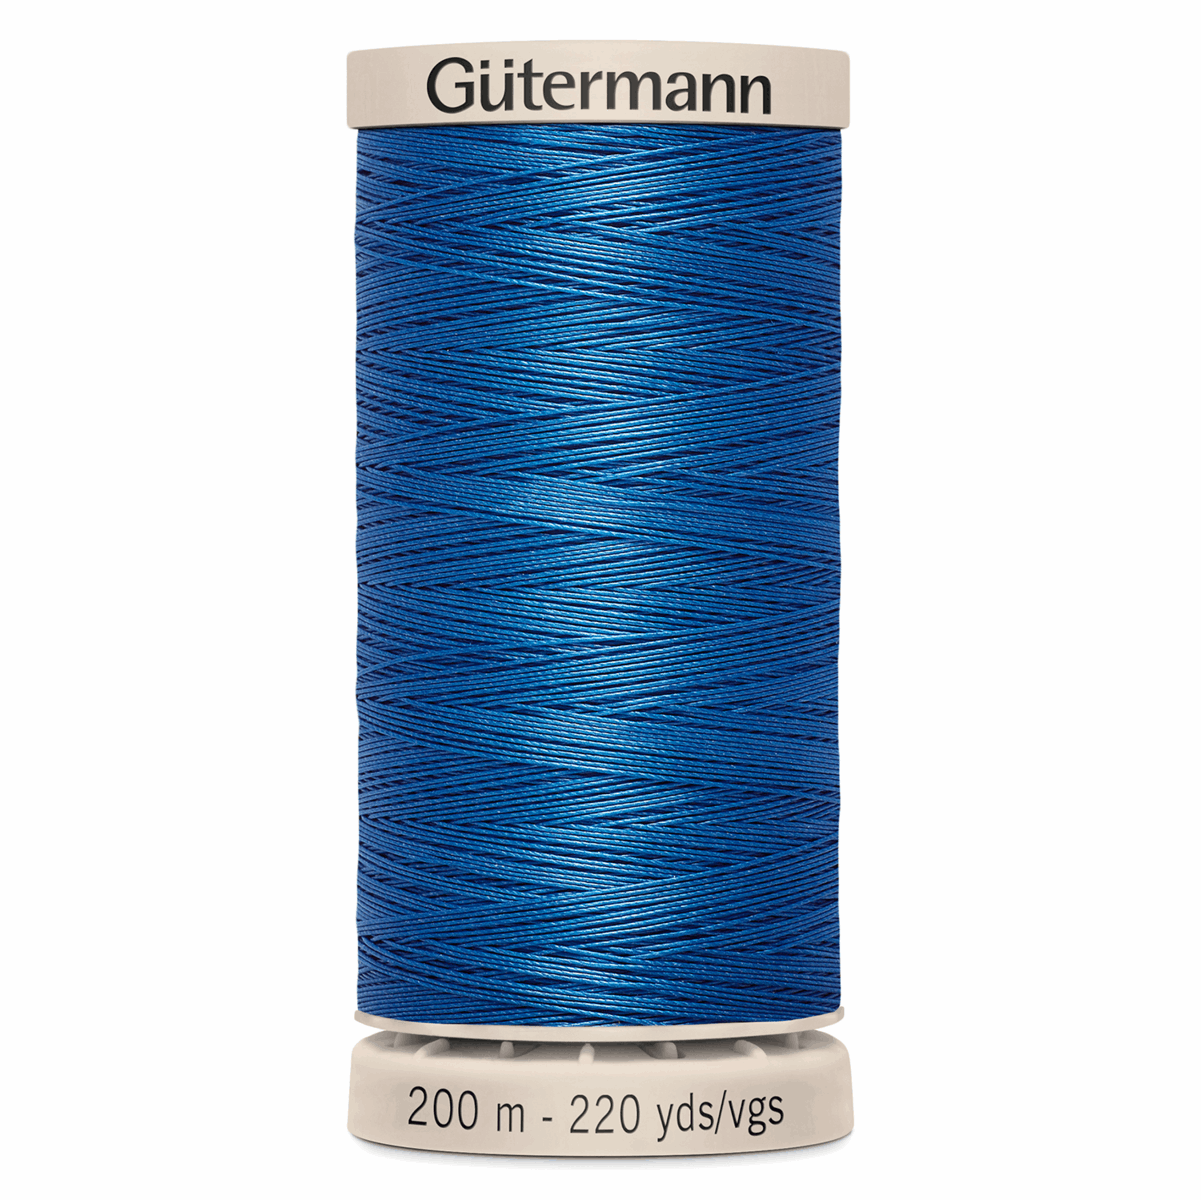 Gutermann Quilting Thread 200m - Colour 5534